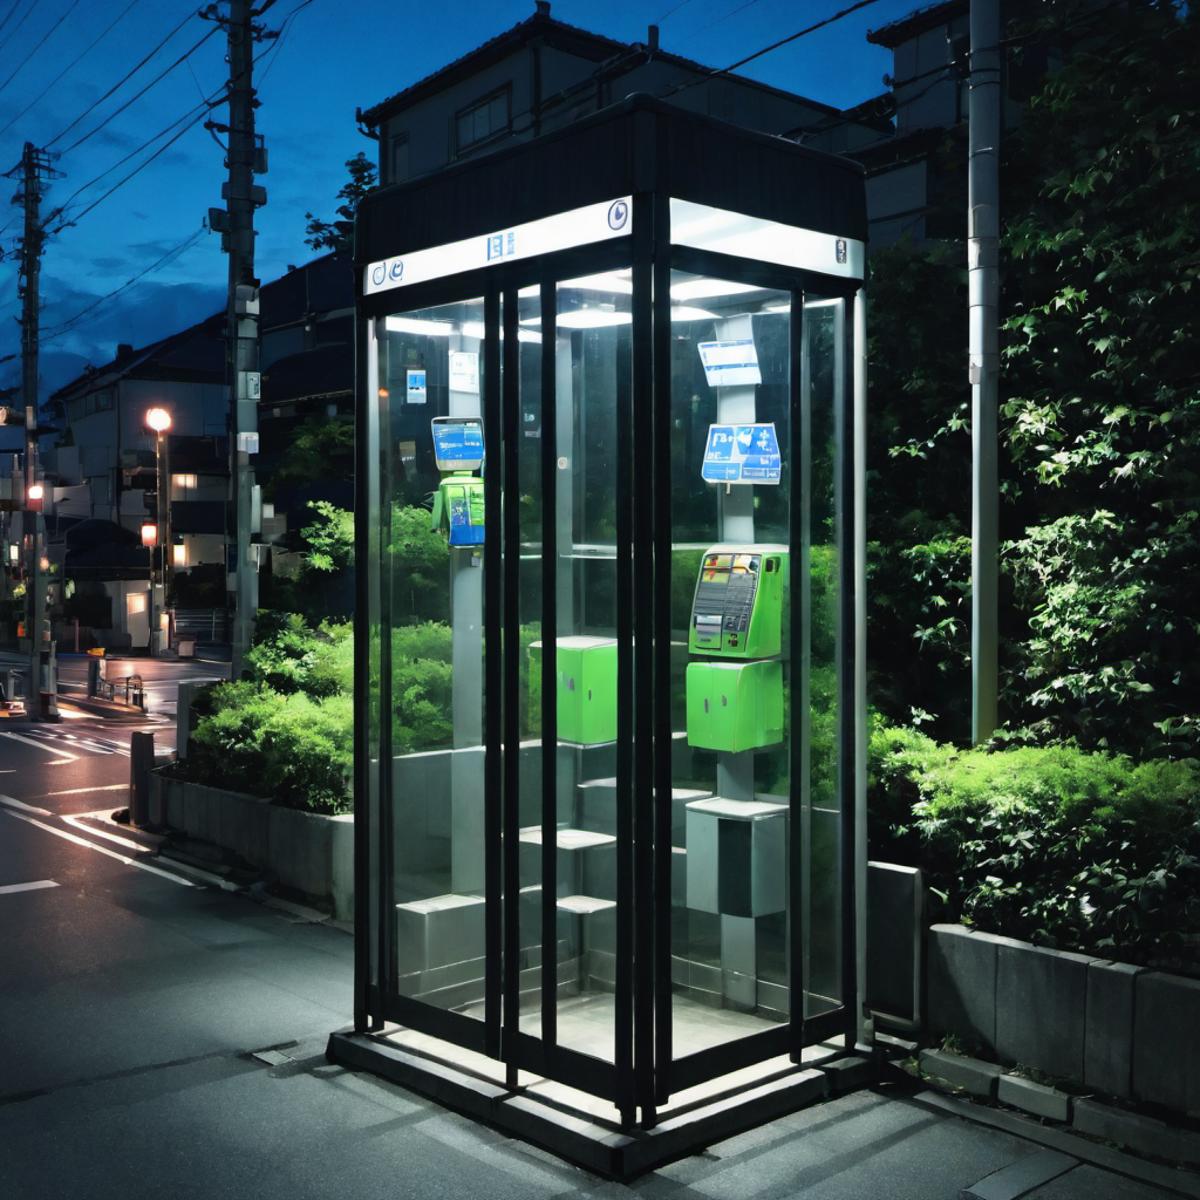 日本の公衆電話 Japanese public phone SDXL image by swingwings